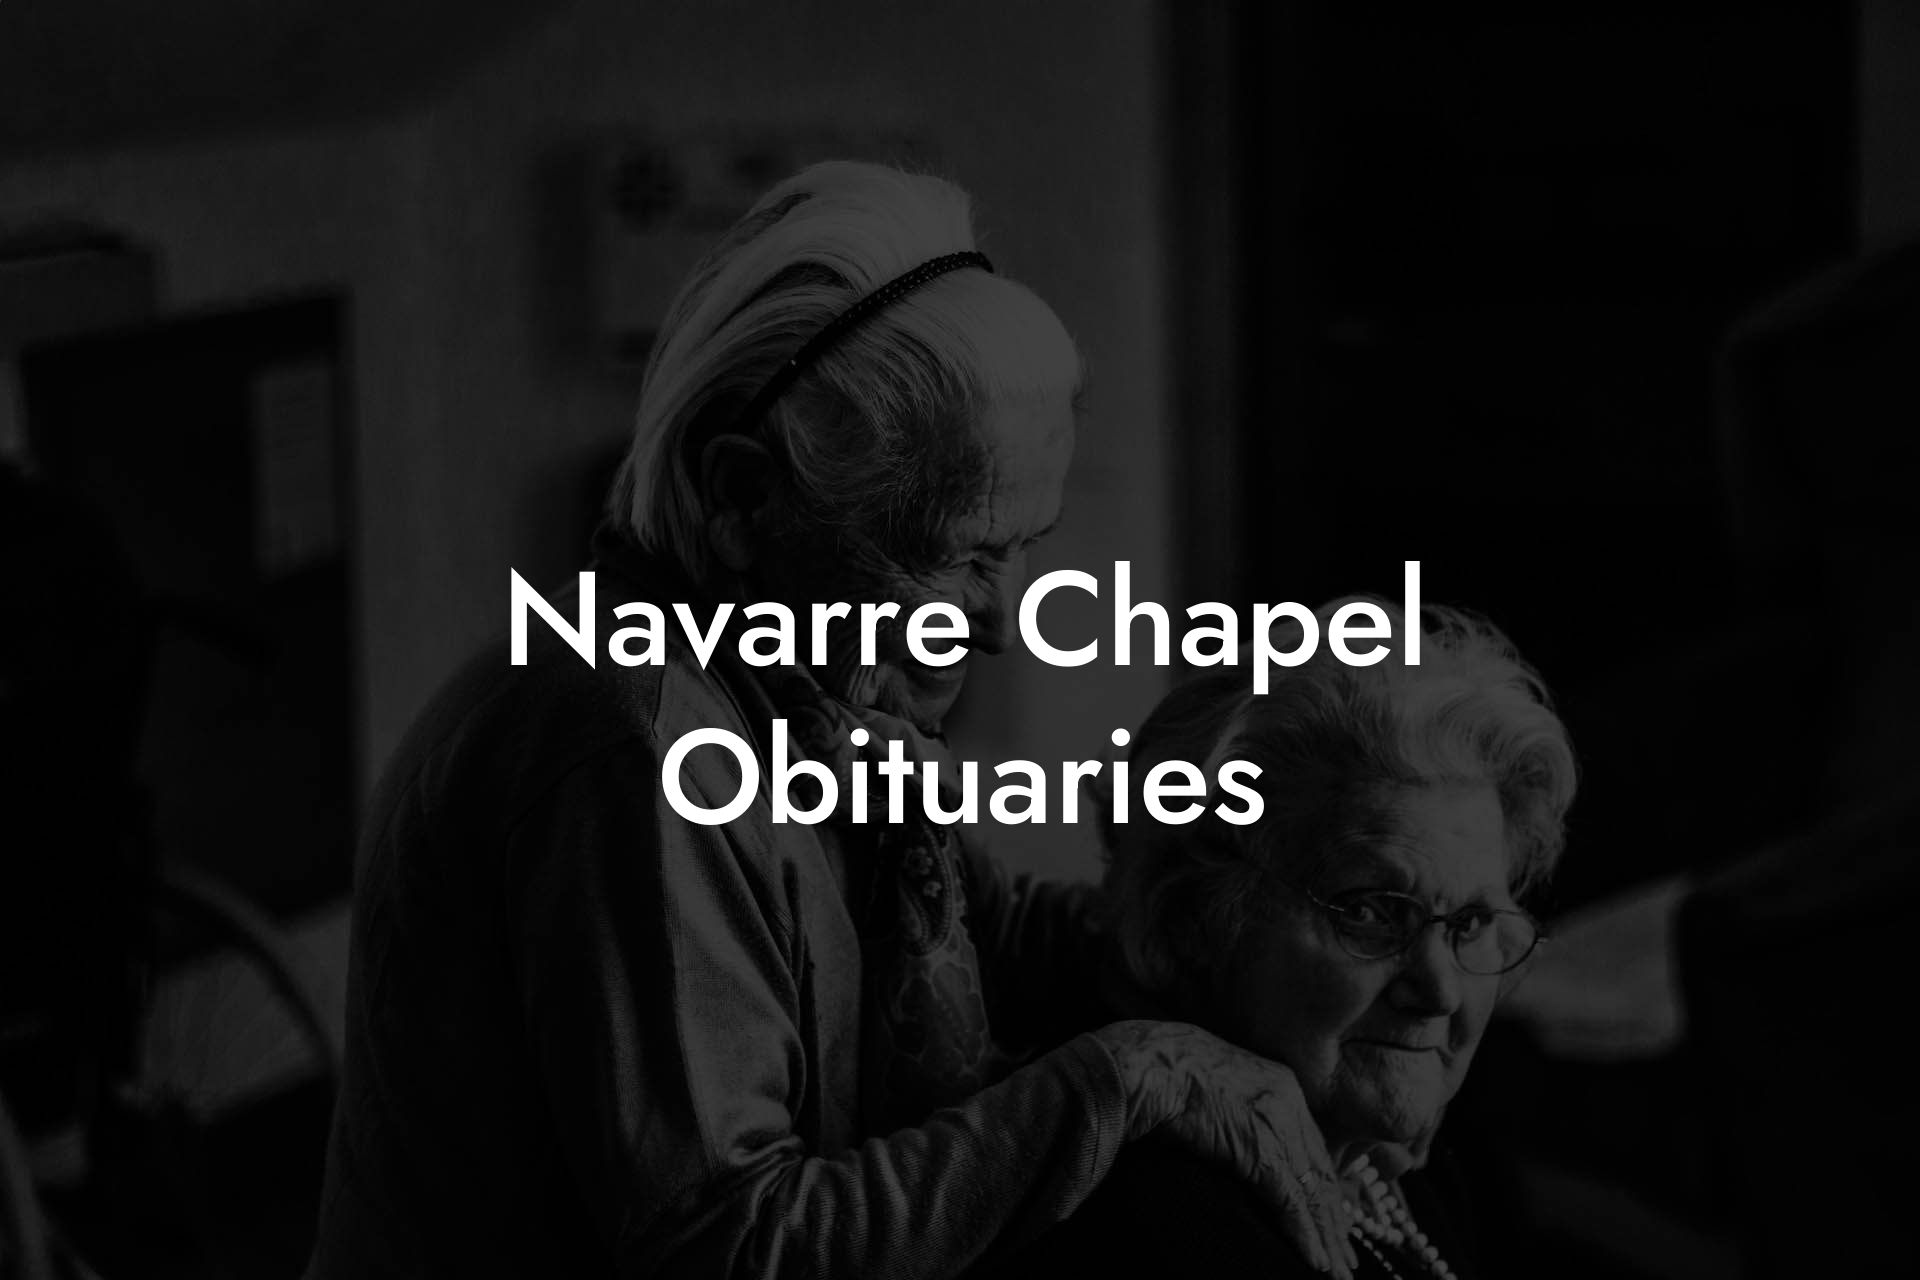 Navarre Chapel Obituaries